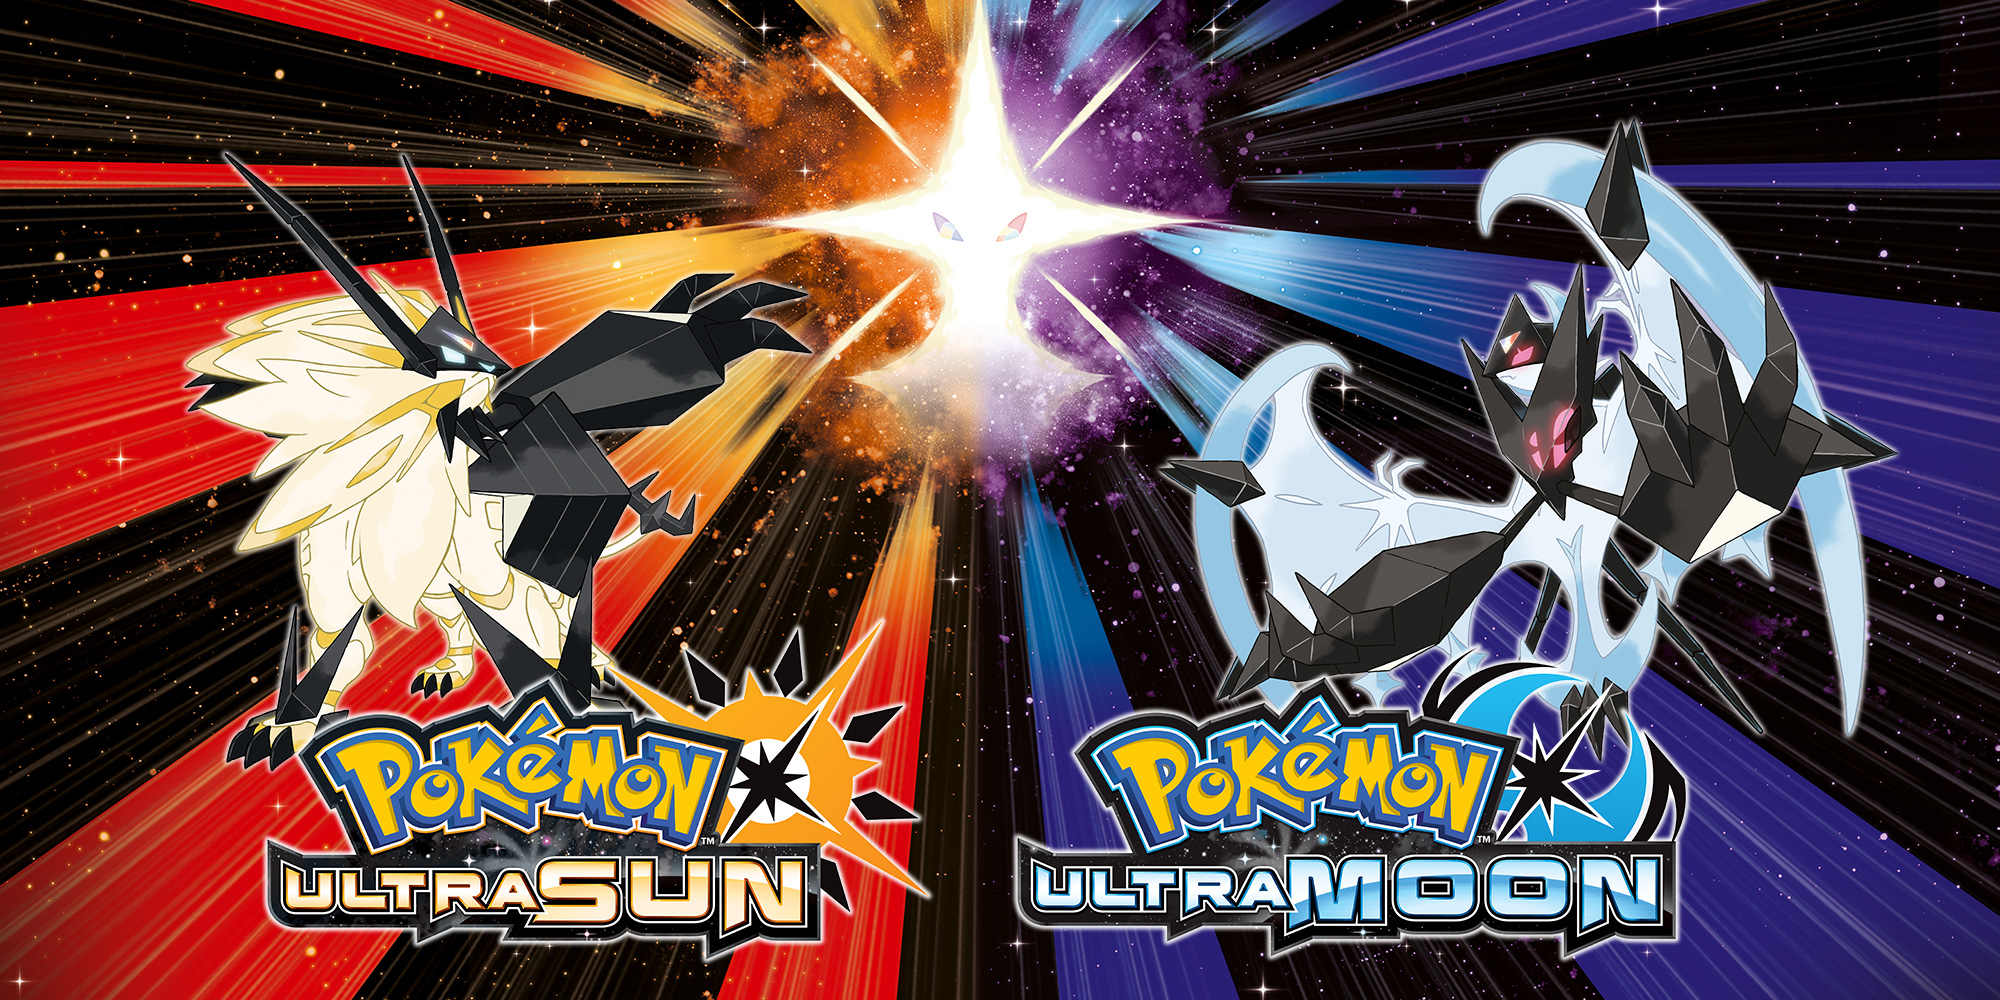 Pokémon Ultra Sun / Pokémon Ultra Moon - Meus Jogos